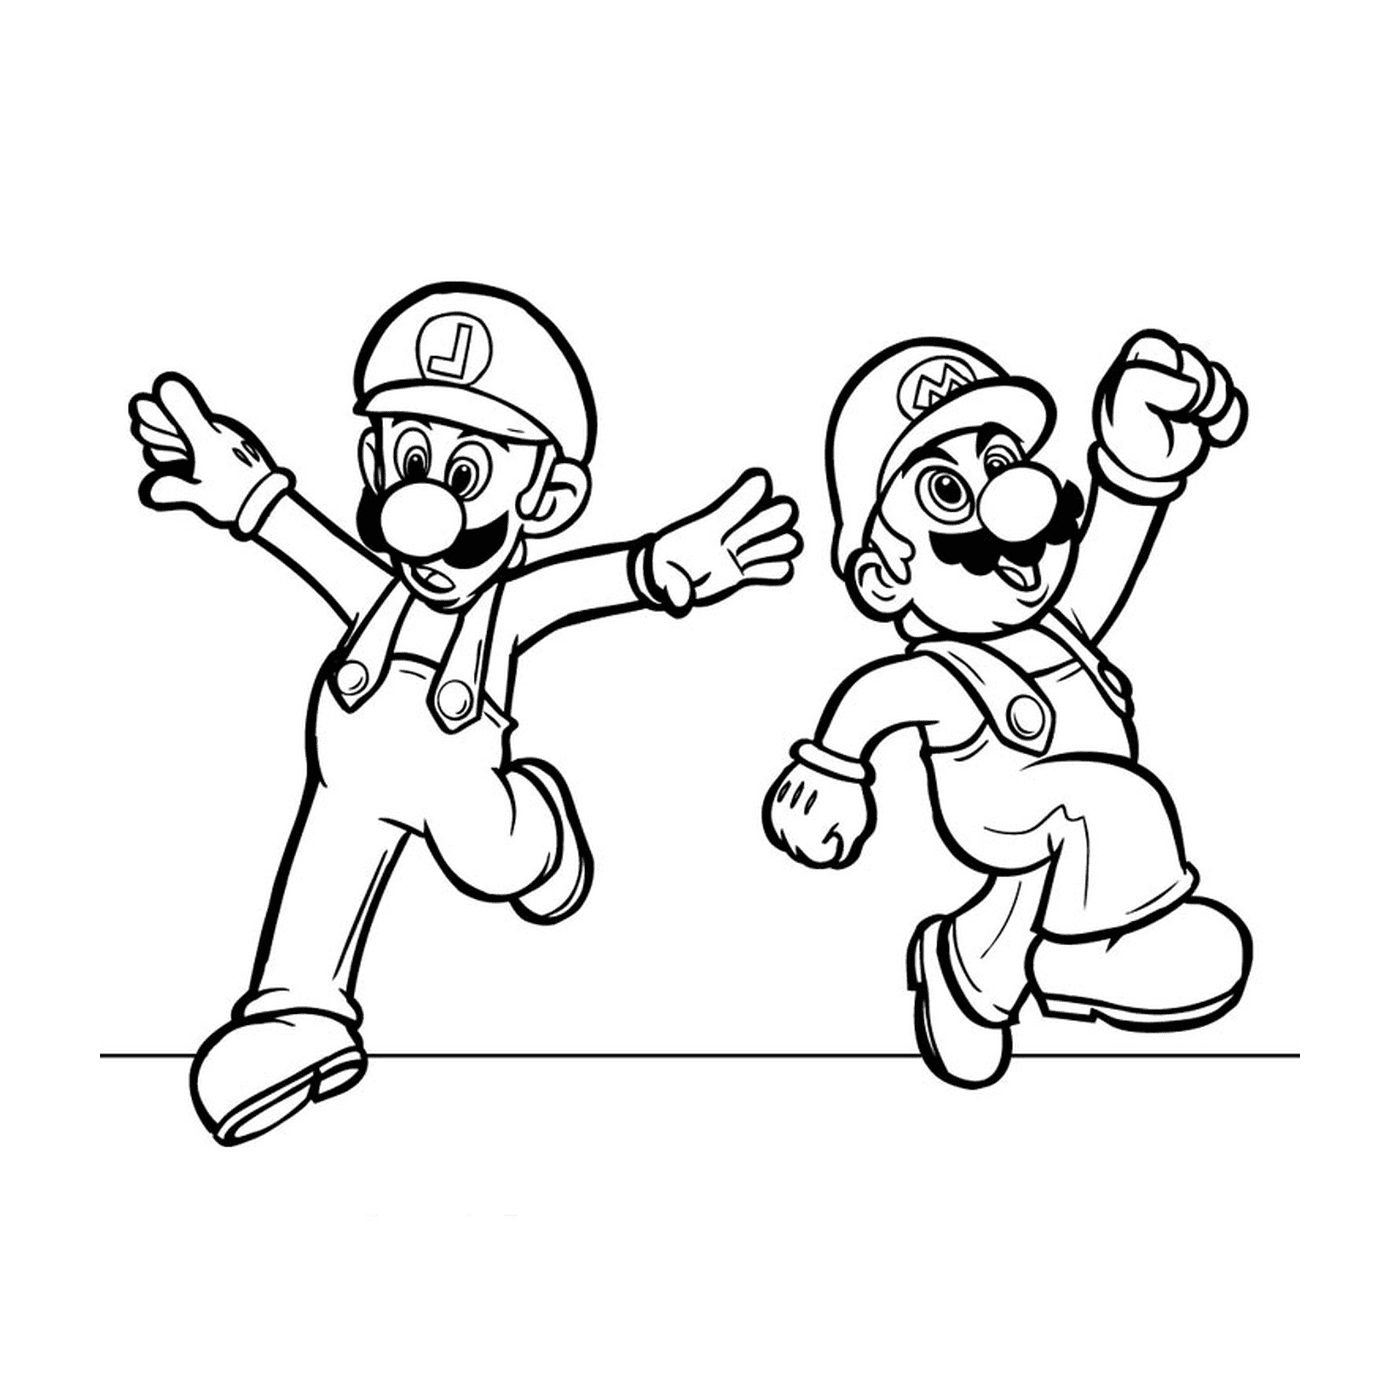  Mario und Luigi zusammen 